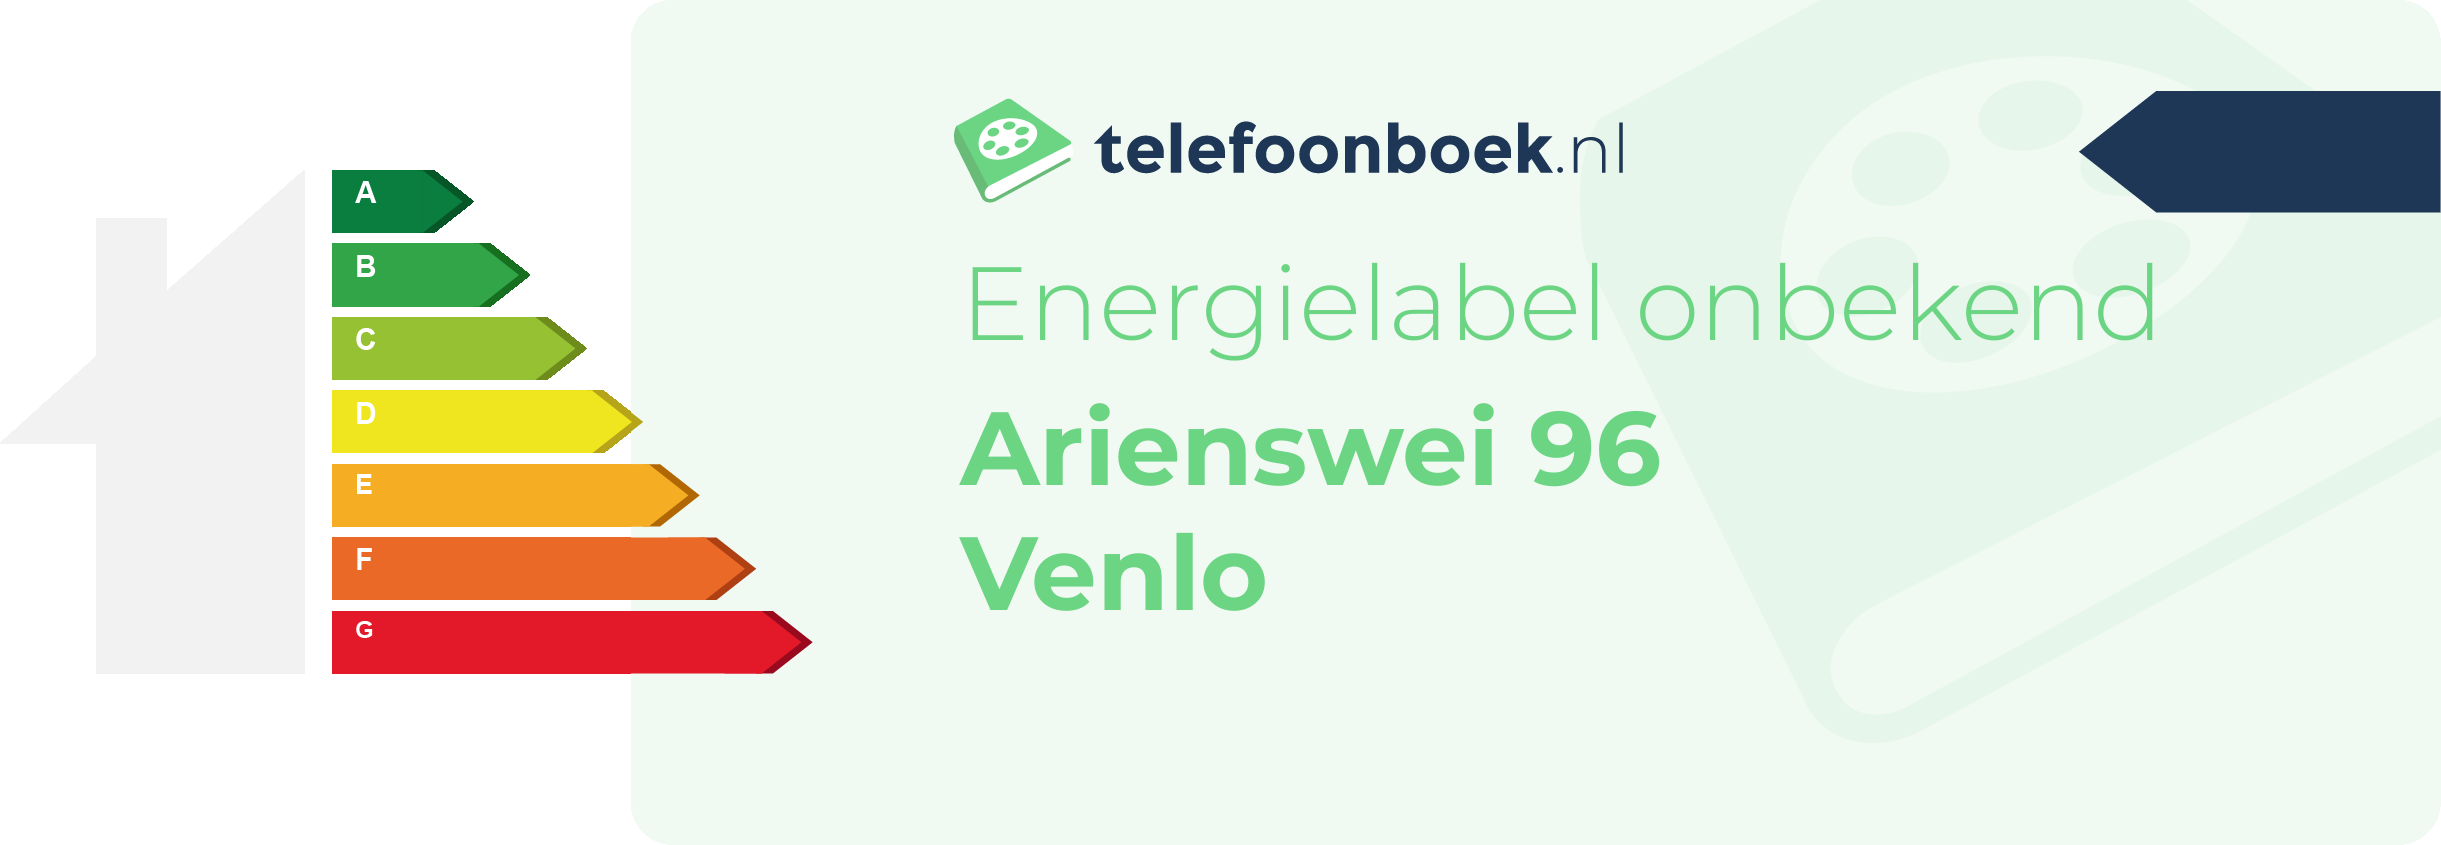 Energielabel Arienswei 96 Venlo